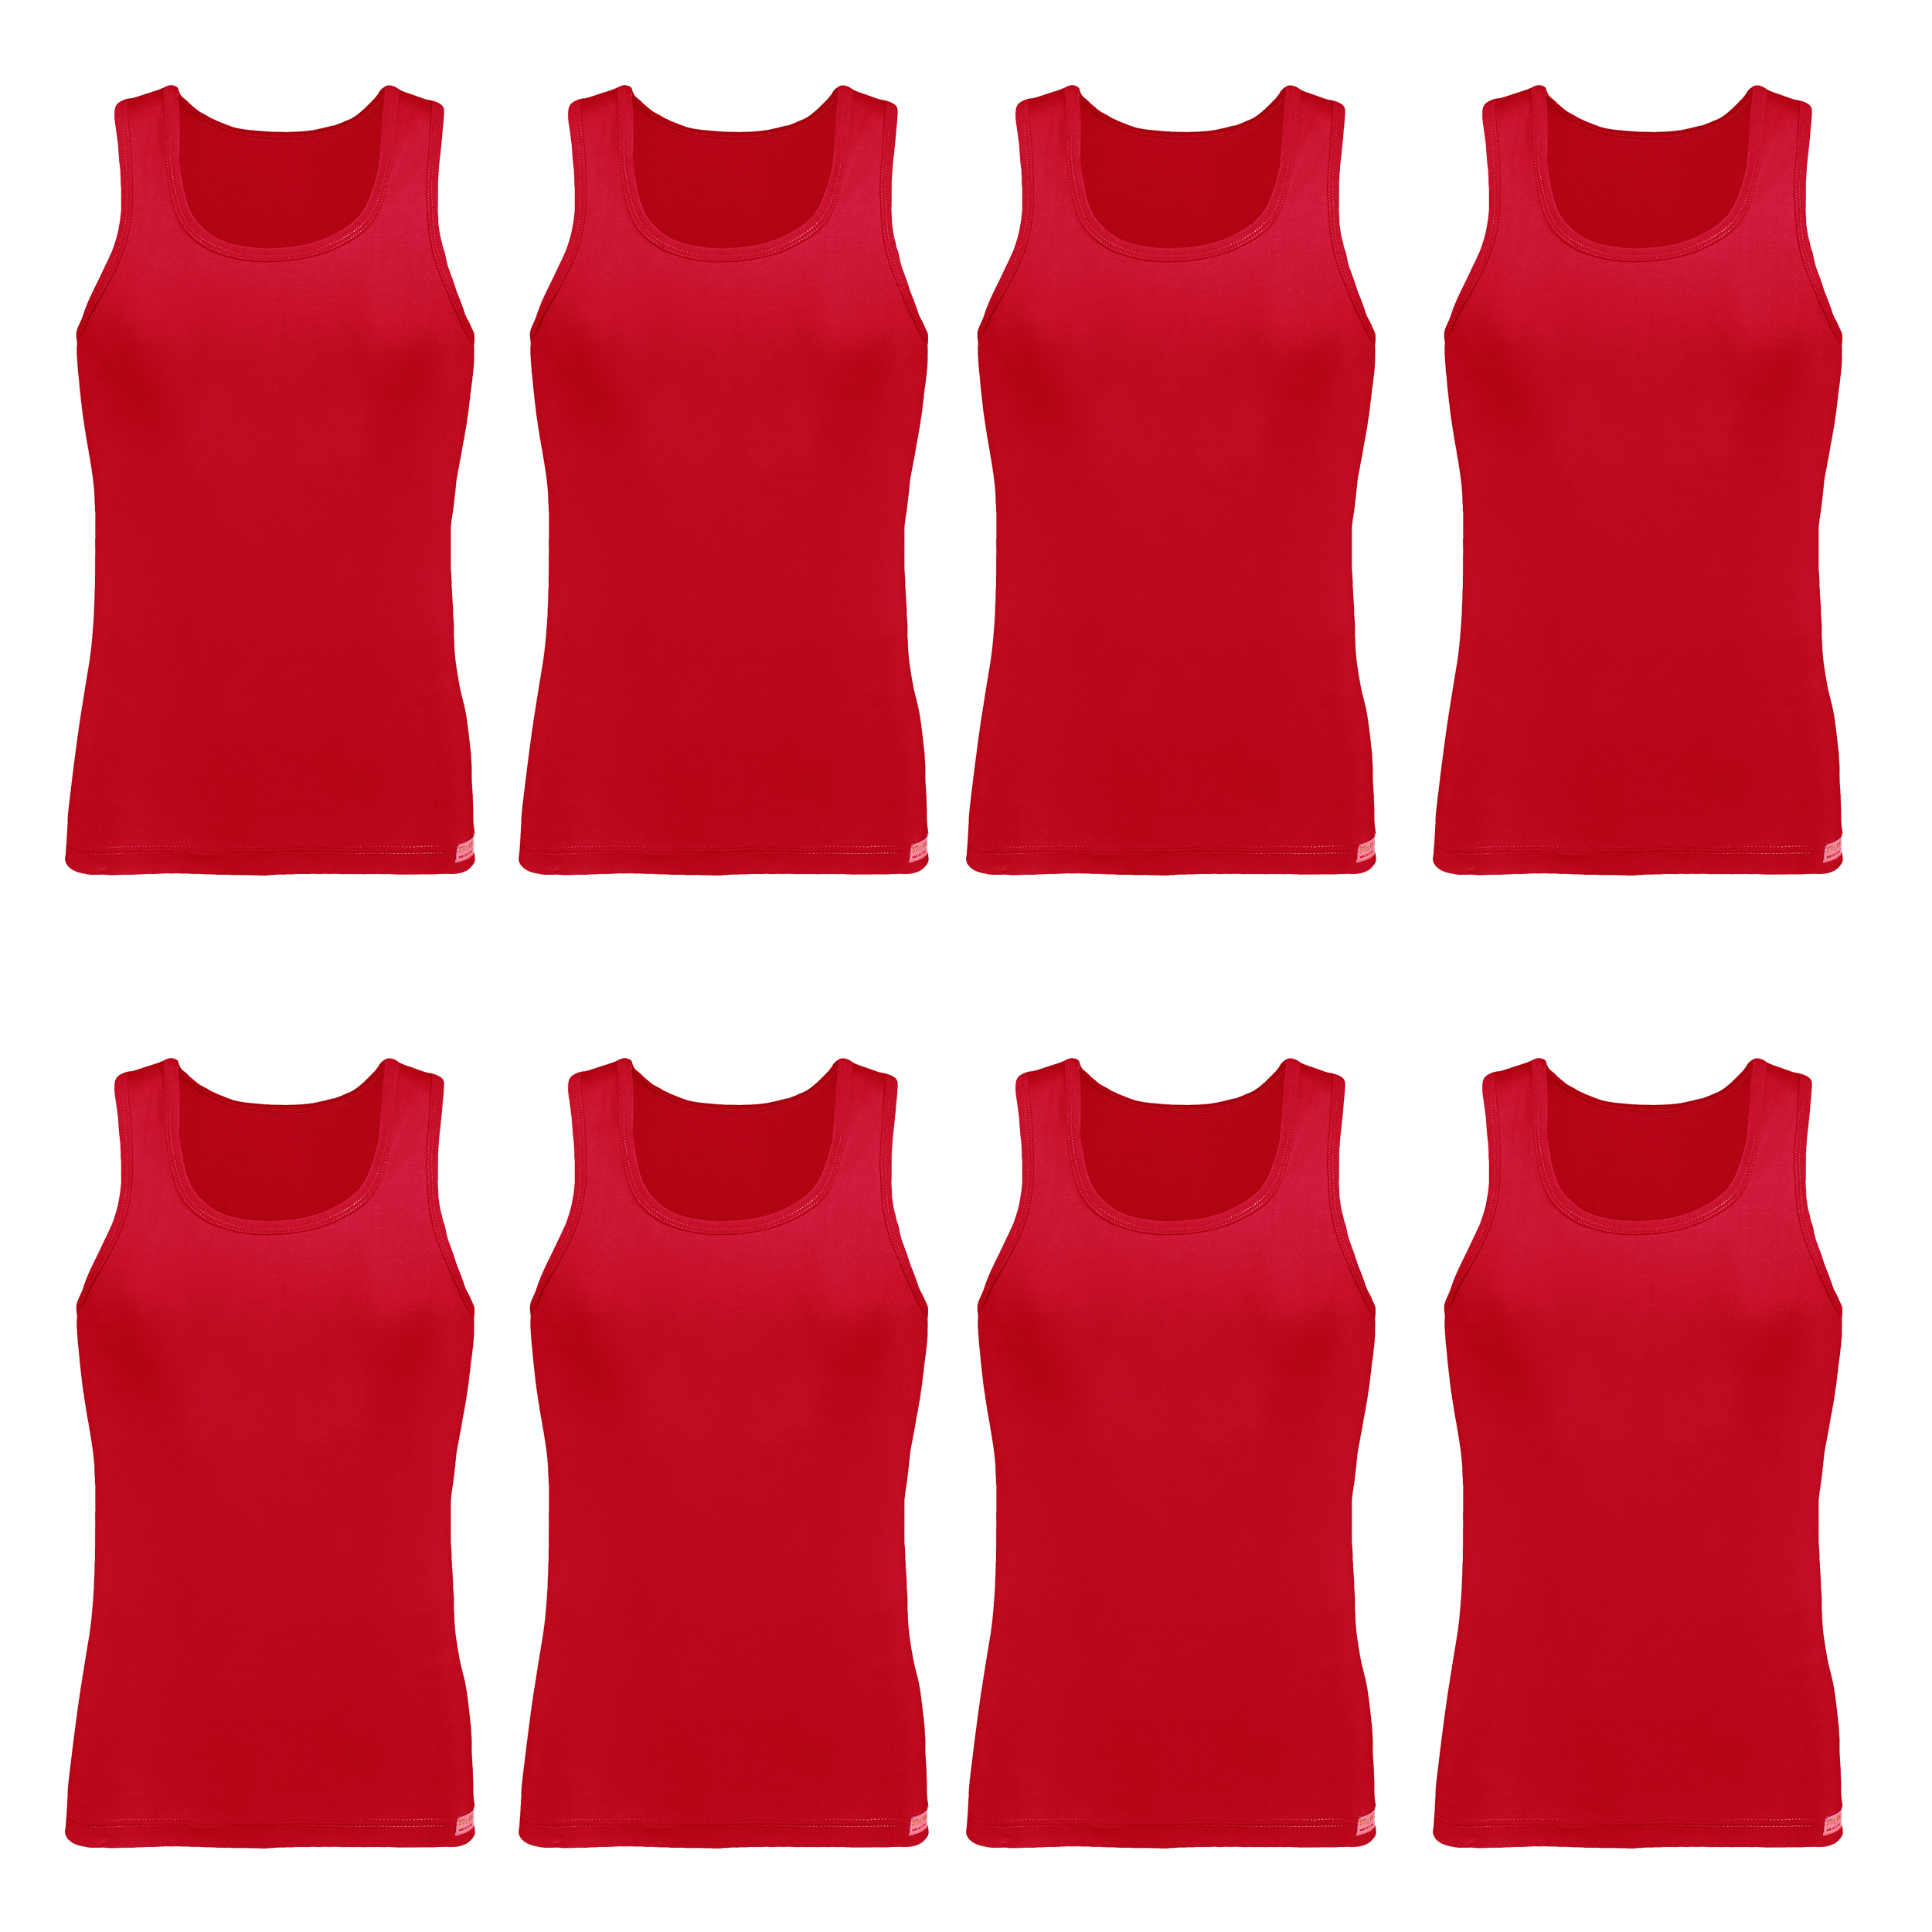 زیرپوش پسرانه برهان تن پوش مدل رکابی 2-01 رنگ قرمز بسته 8 عددی